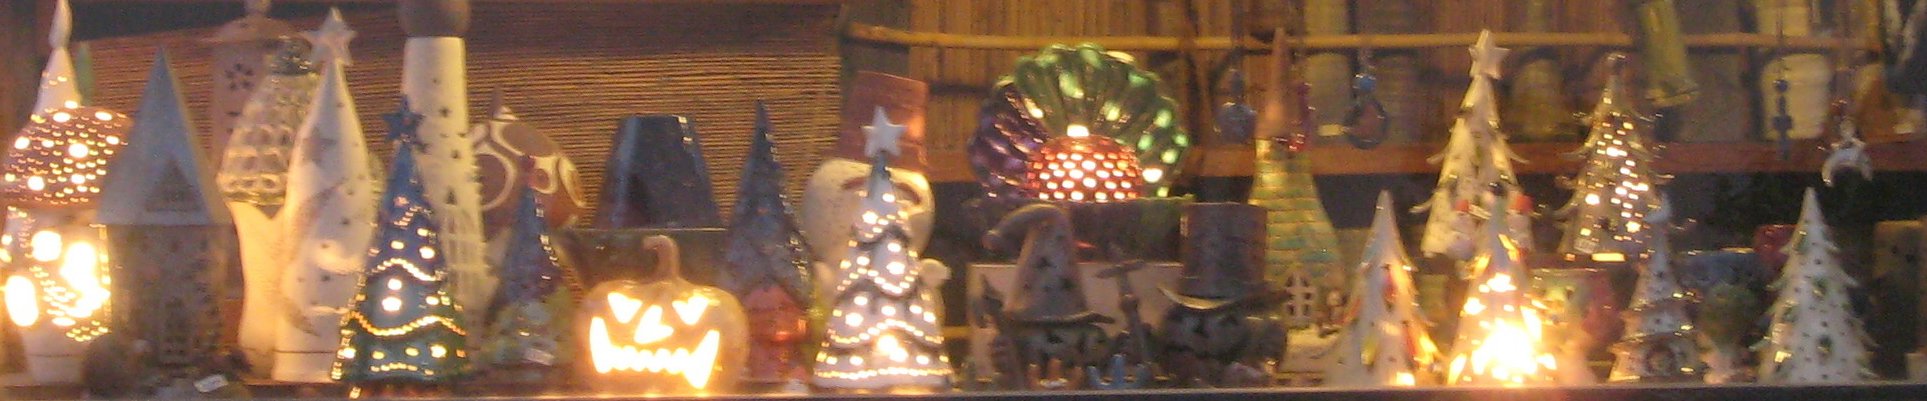 陶器のランプシェード